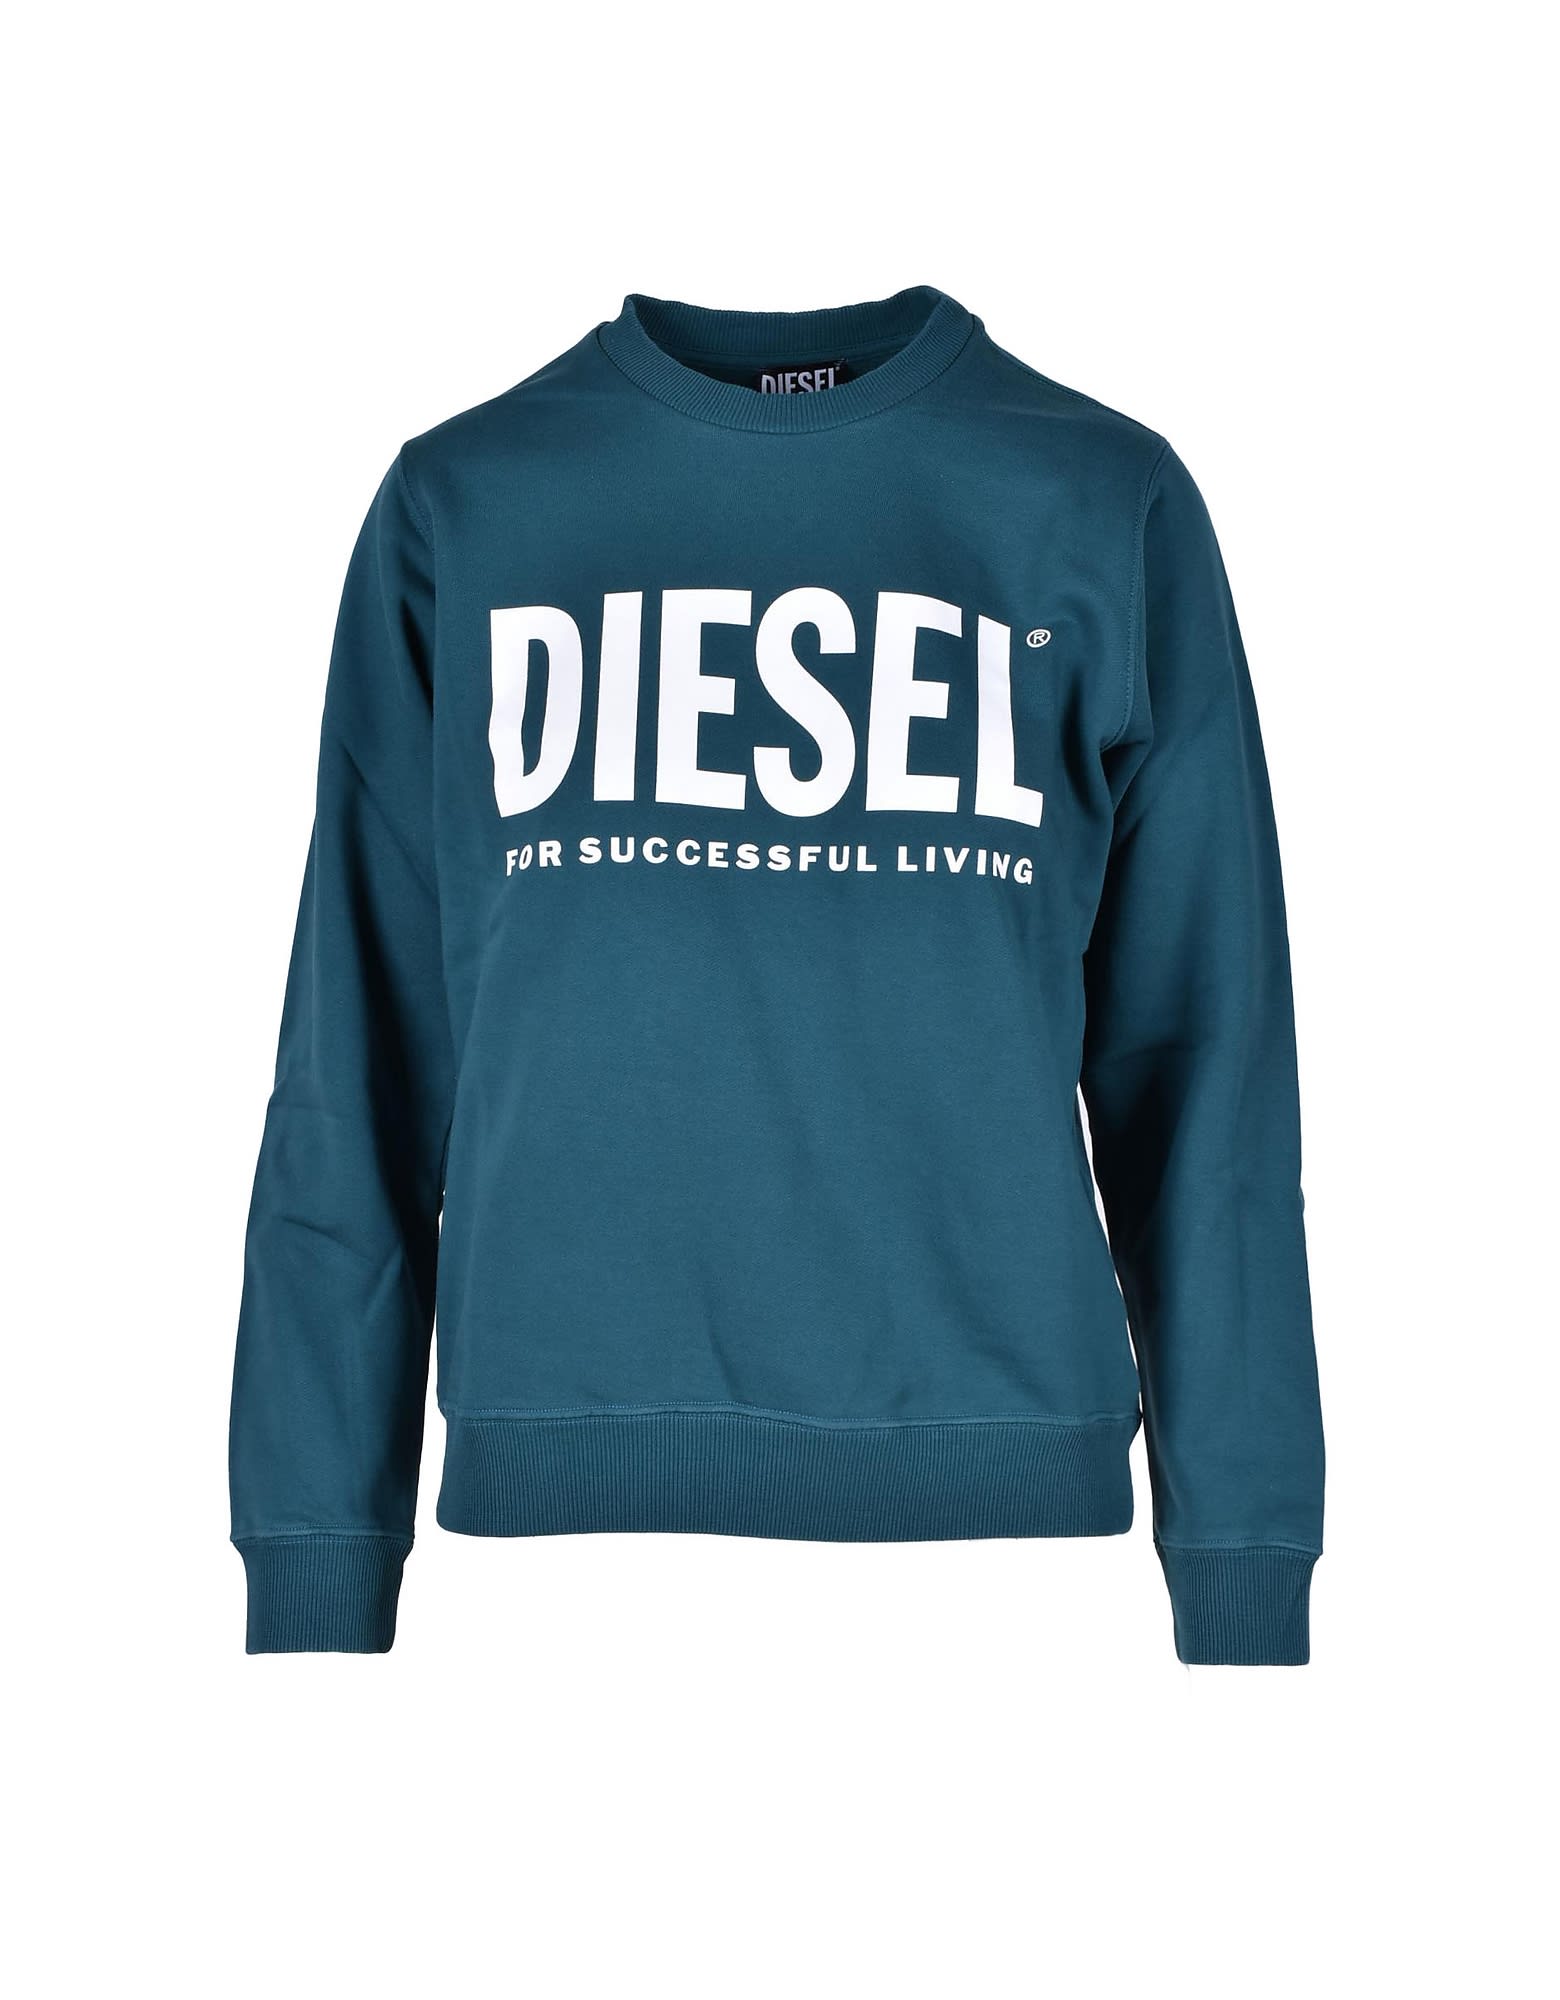 Diesel Womens Green Sweatshirt